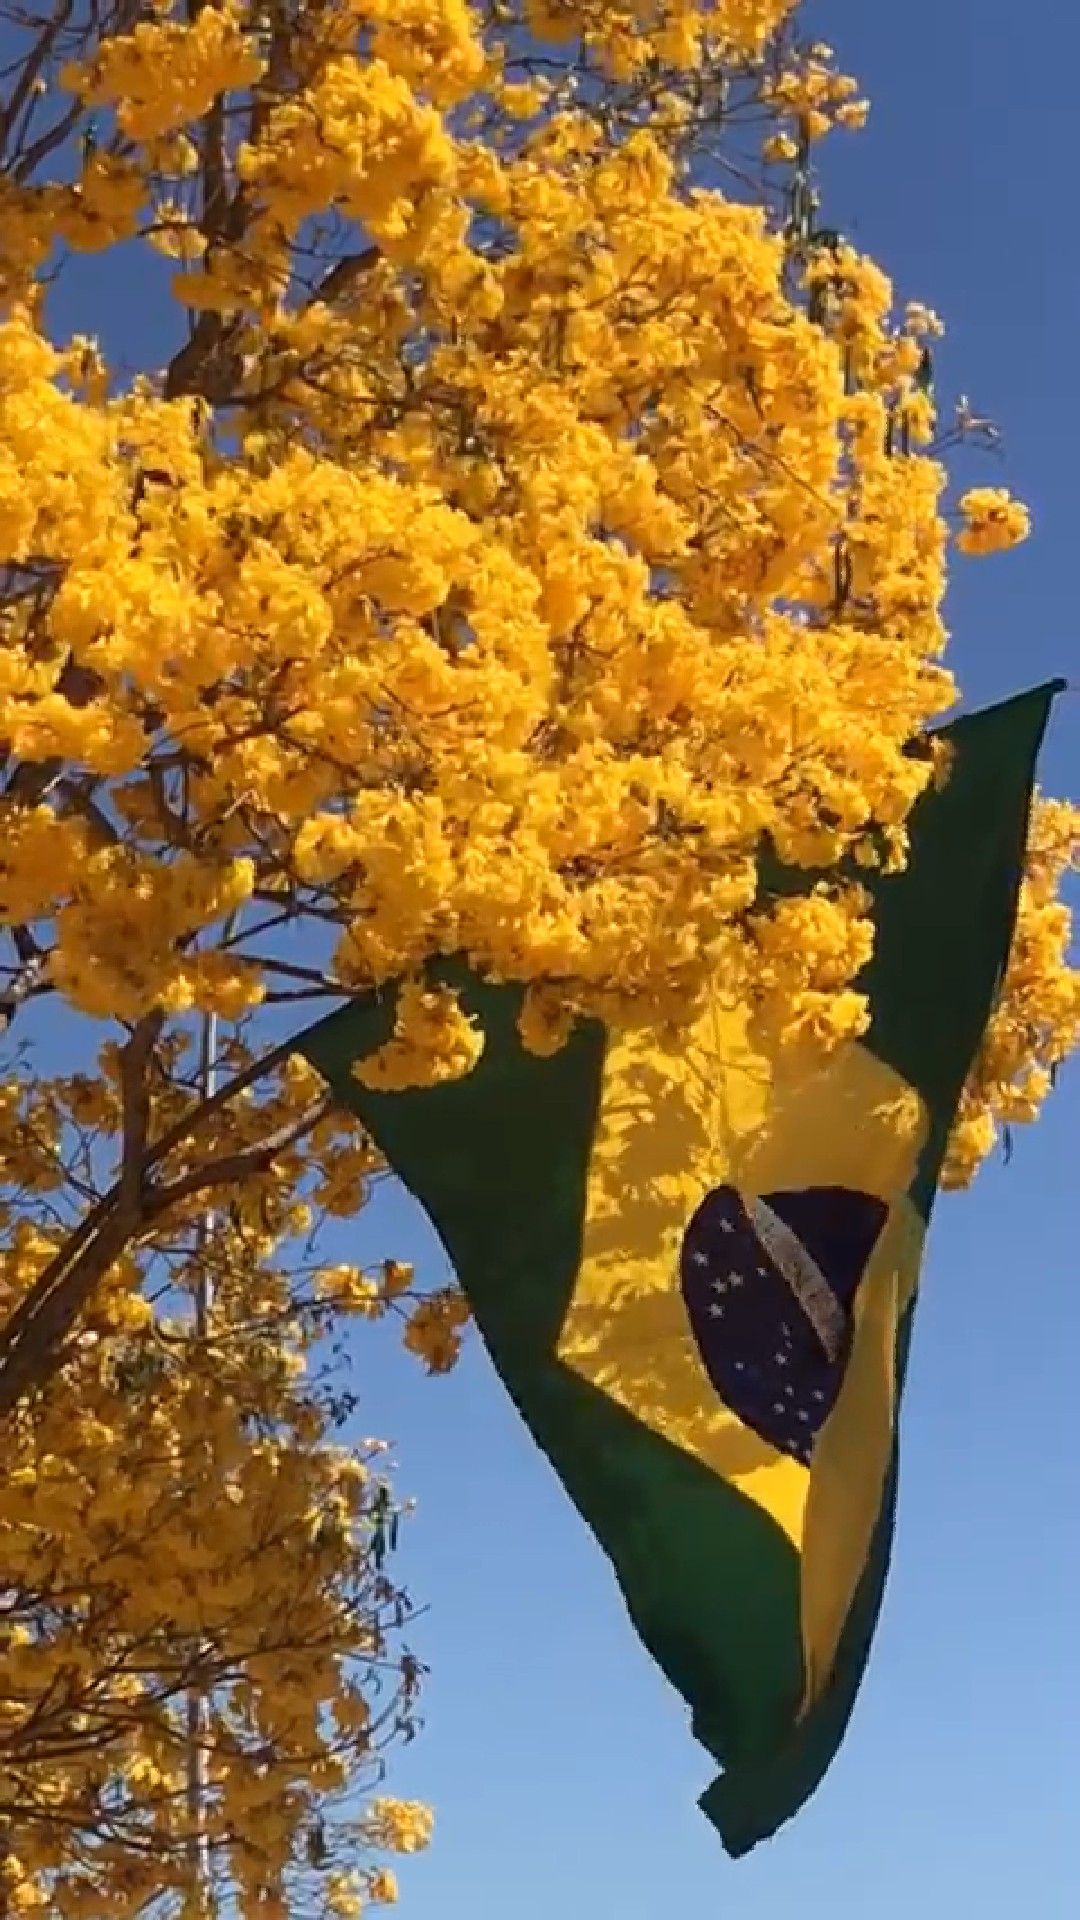 Wallpaper Bendera Brasil